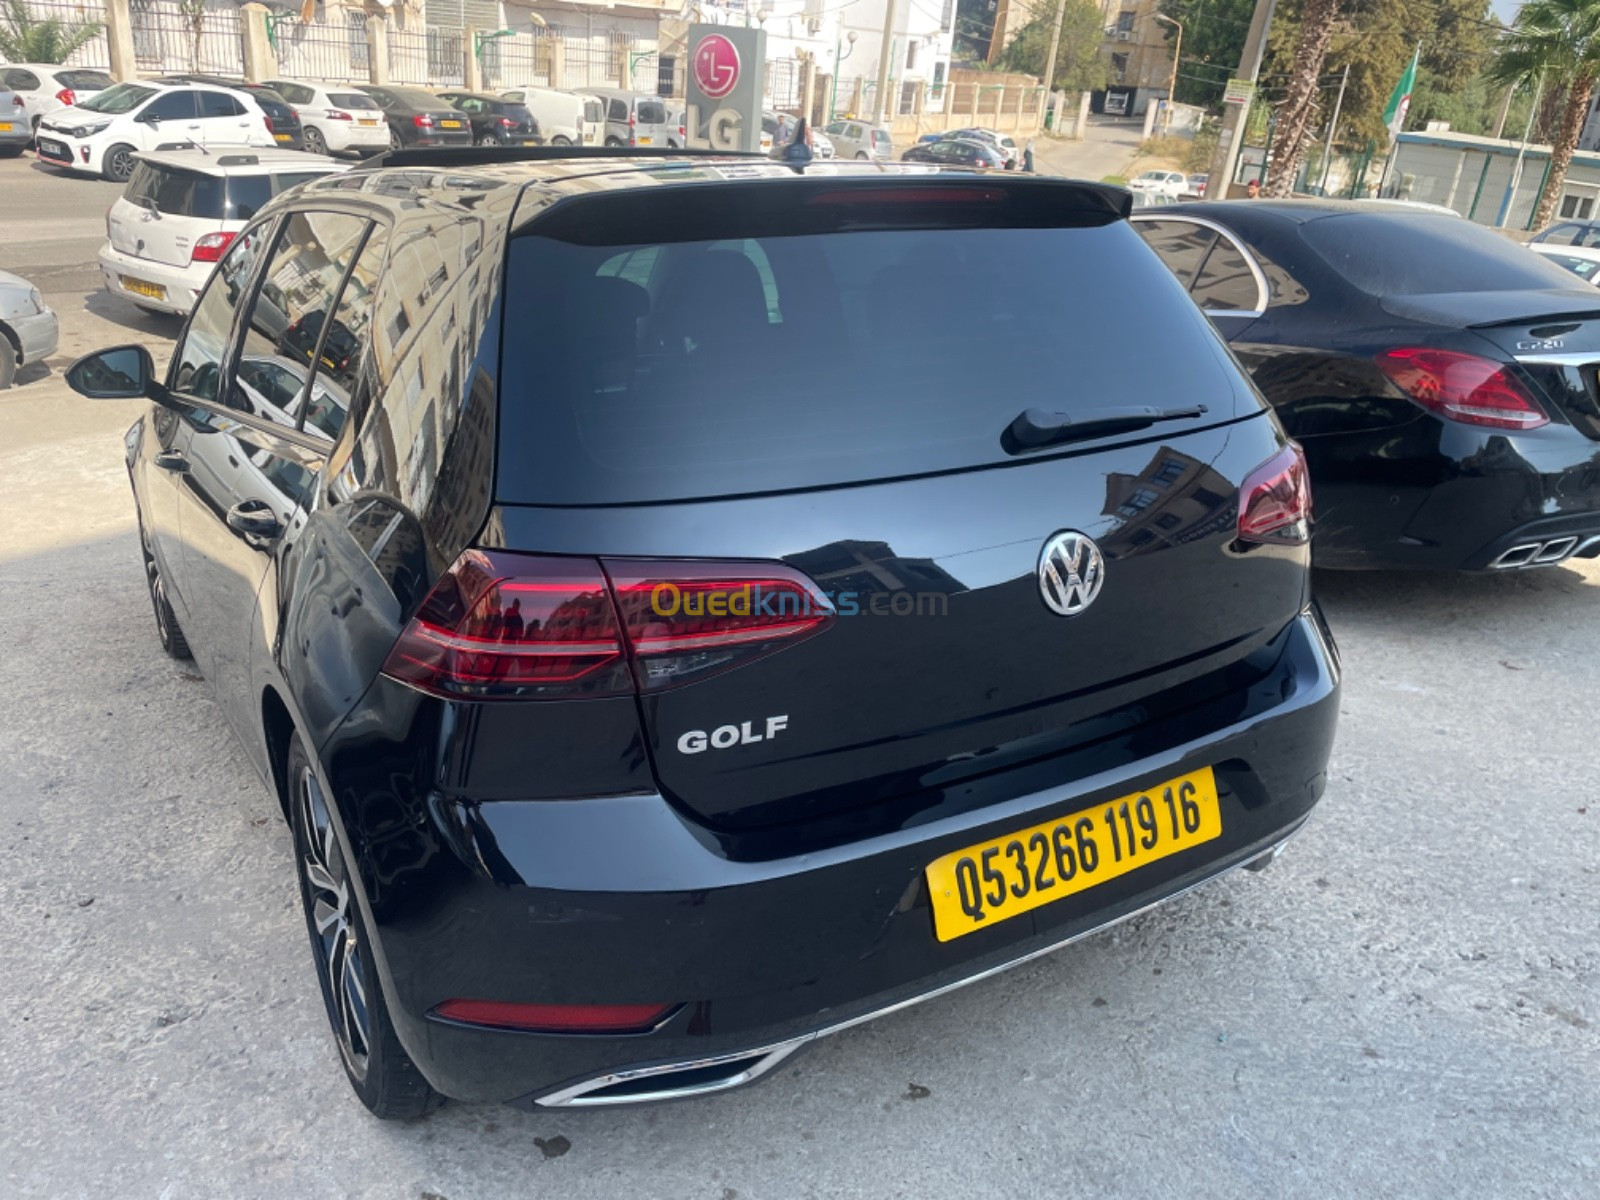 Volkswagen Golf 7 2019 Golf 7